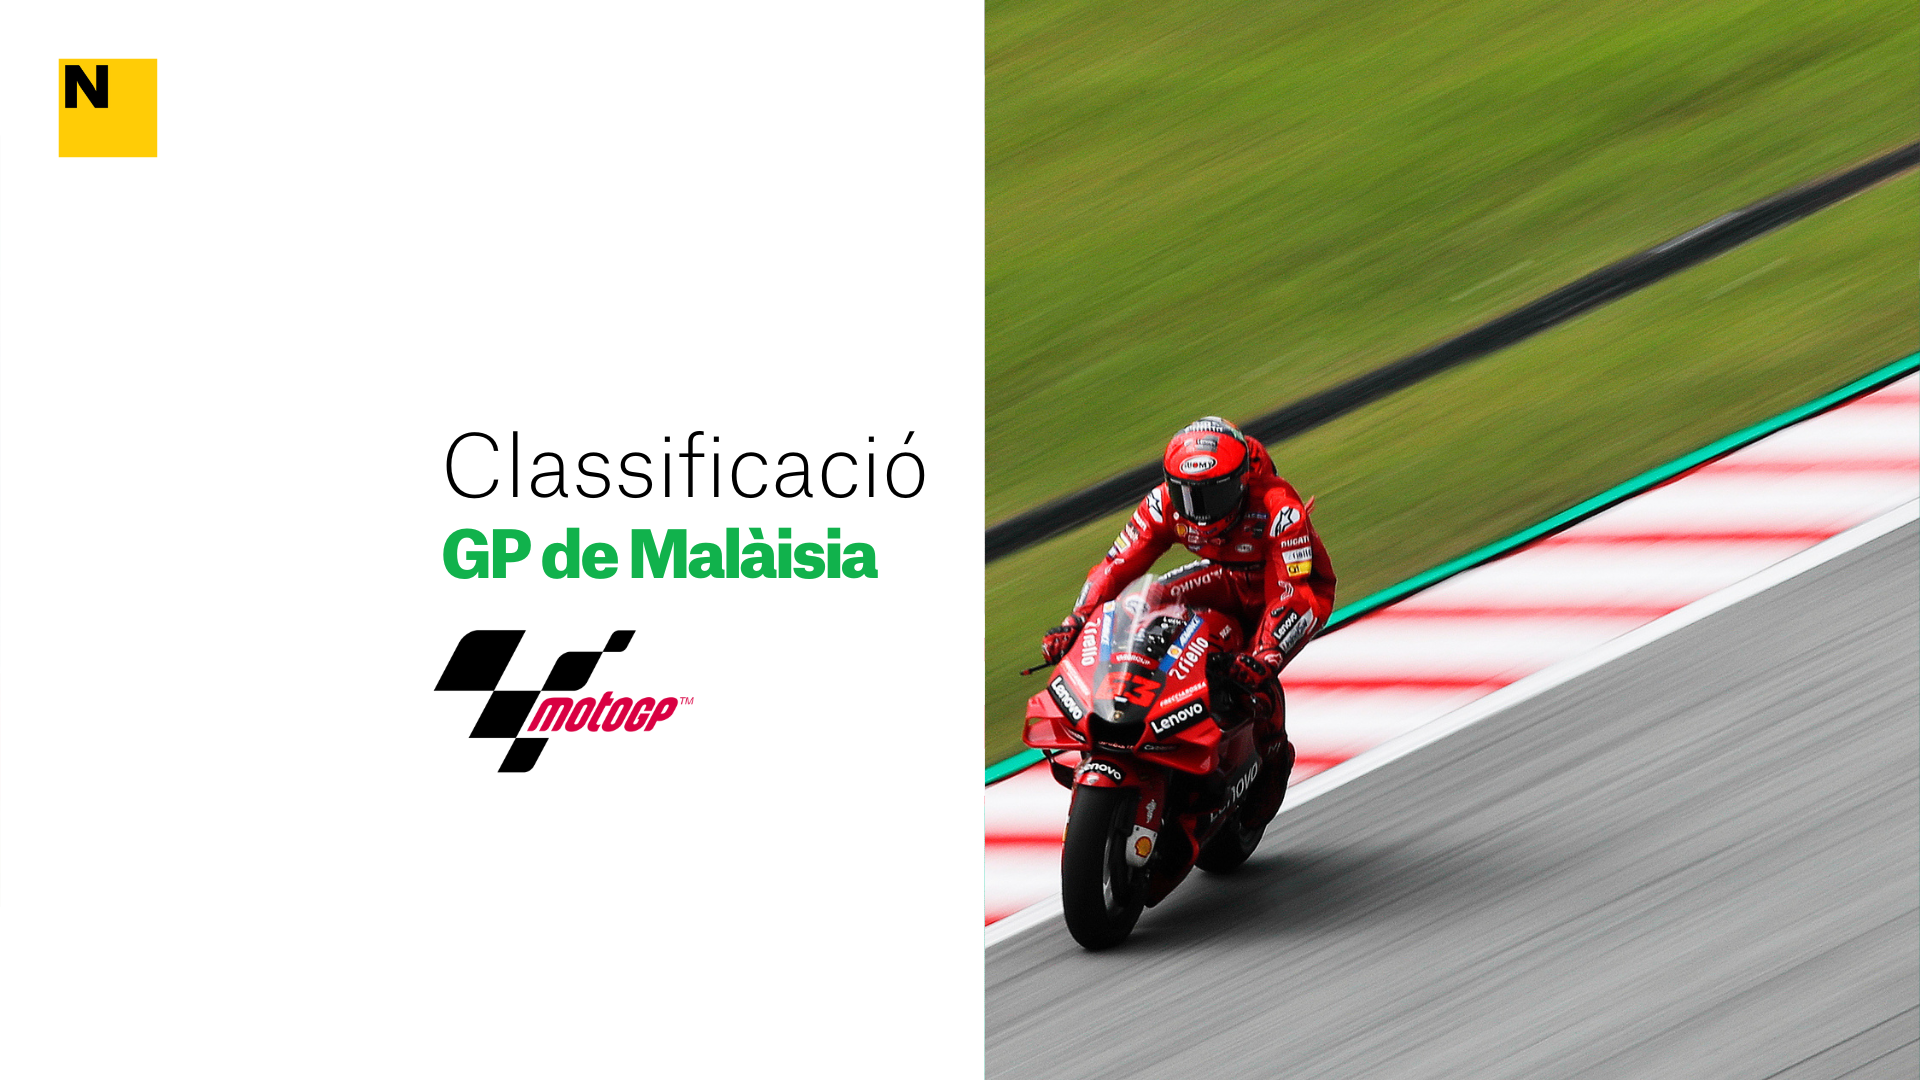 Clasificación y resultados de la carrera de MotoGP del Gran Premio de Malasia 2022